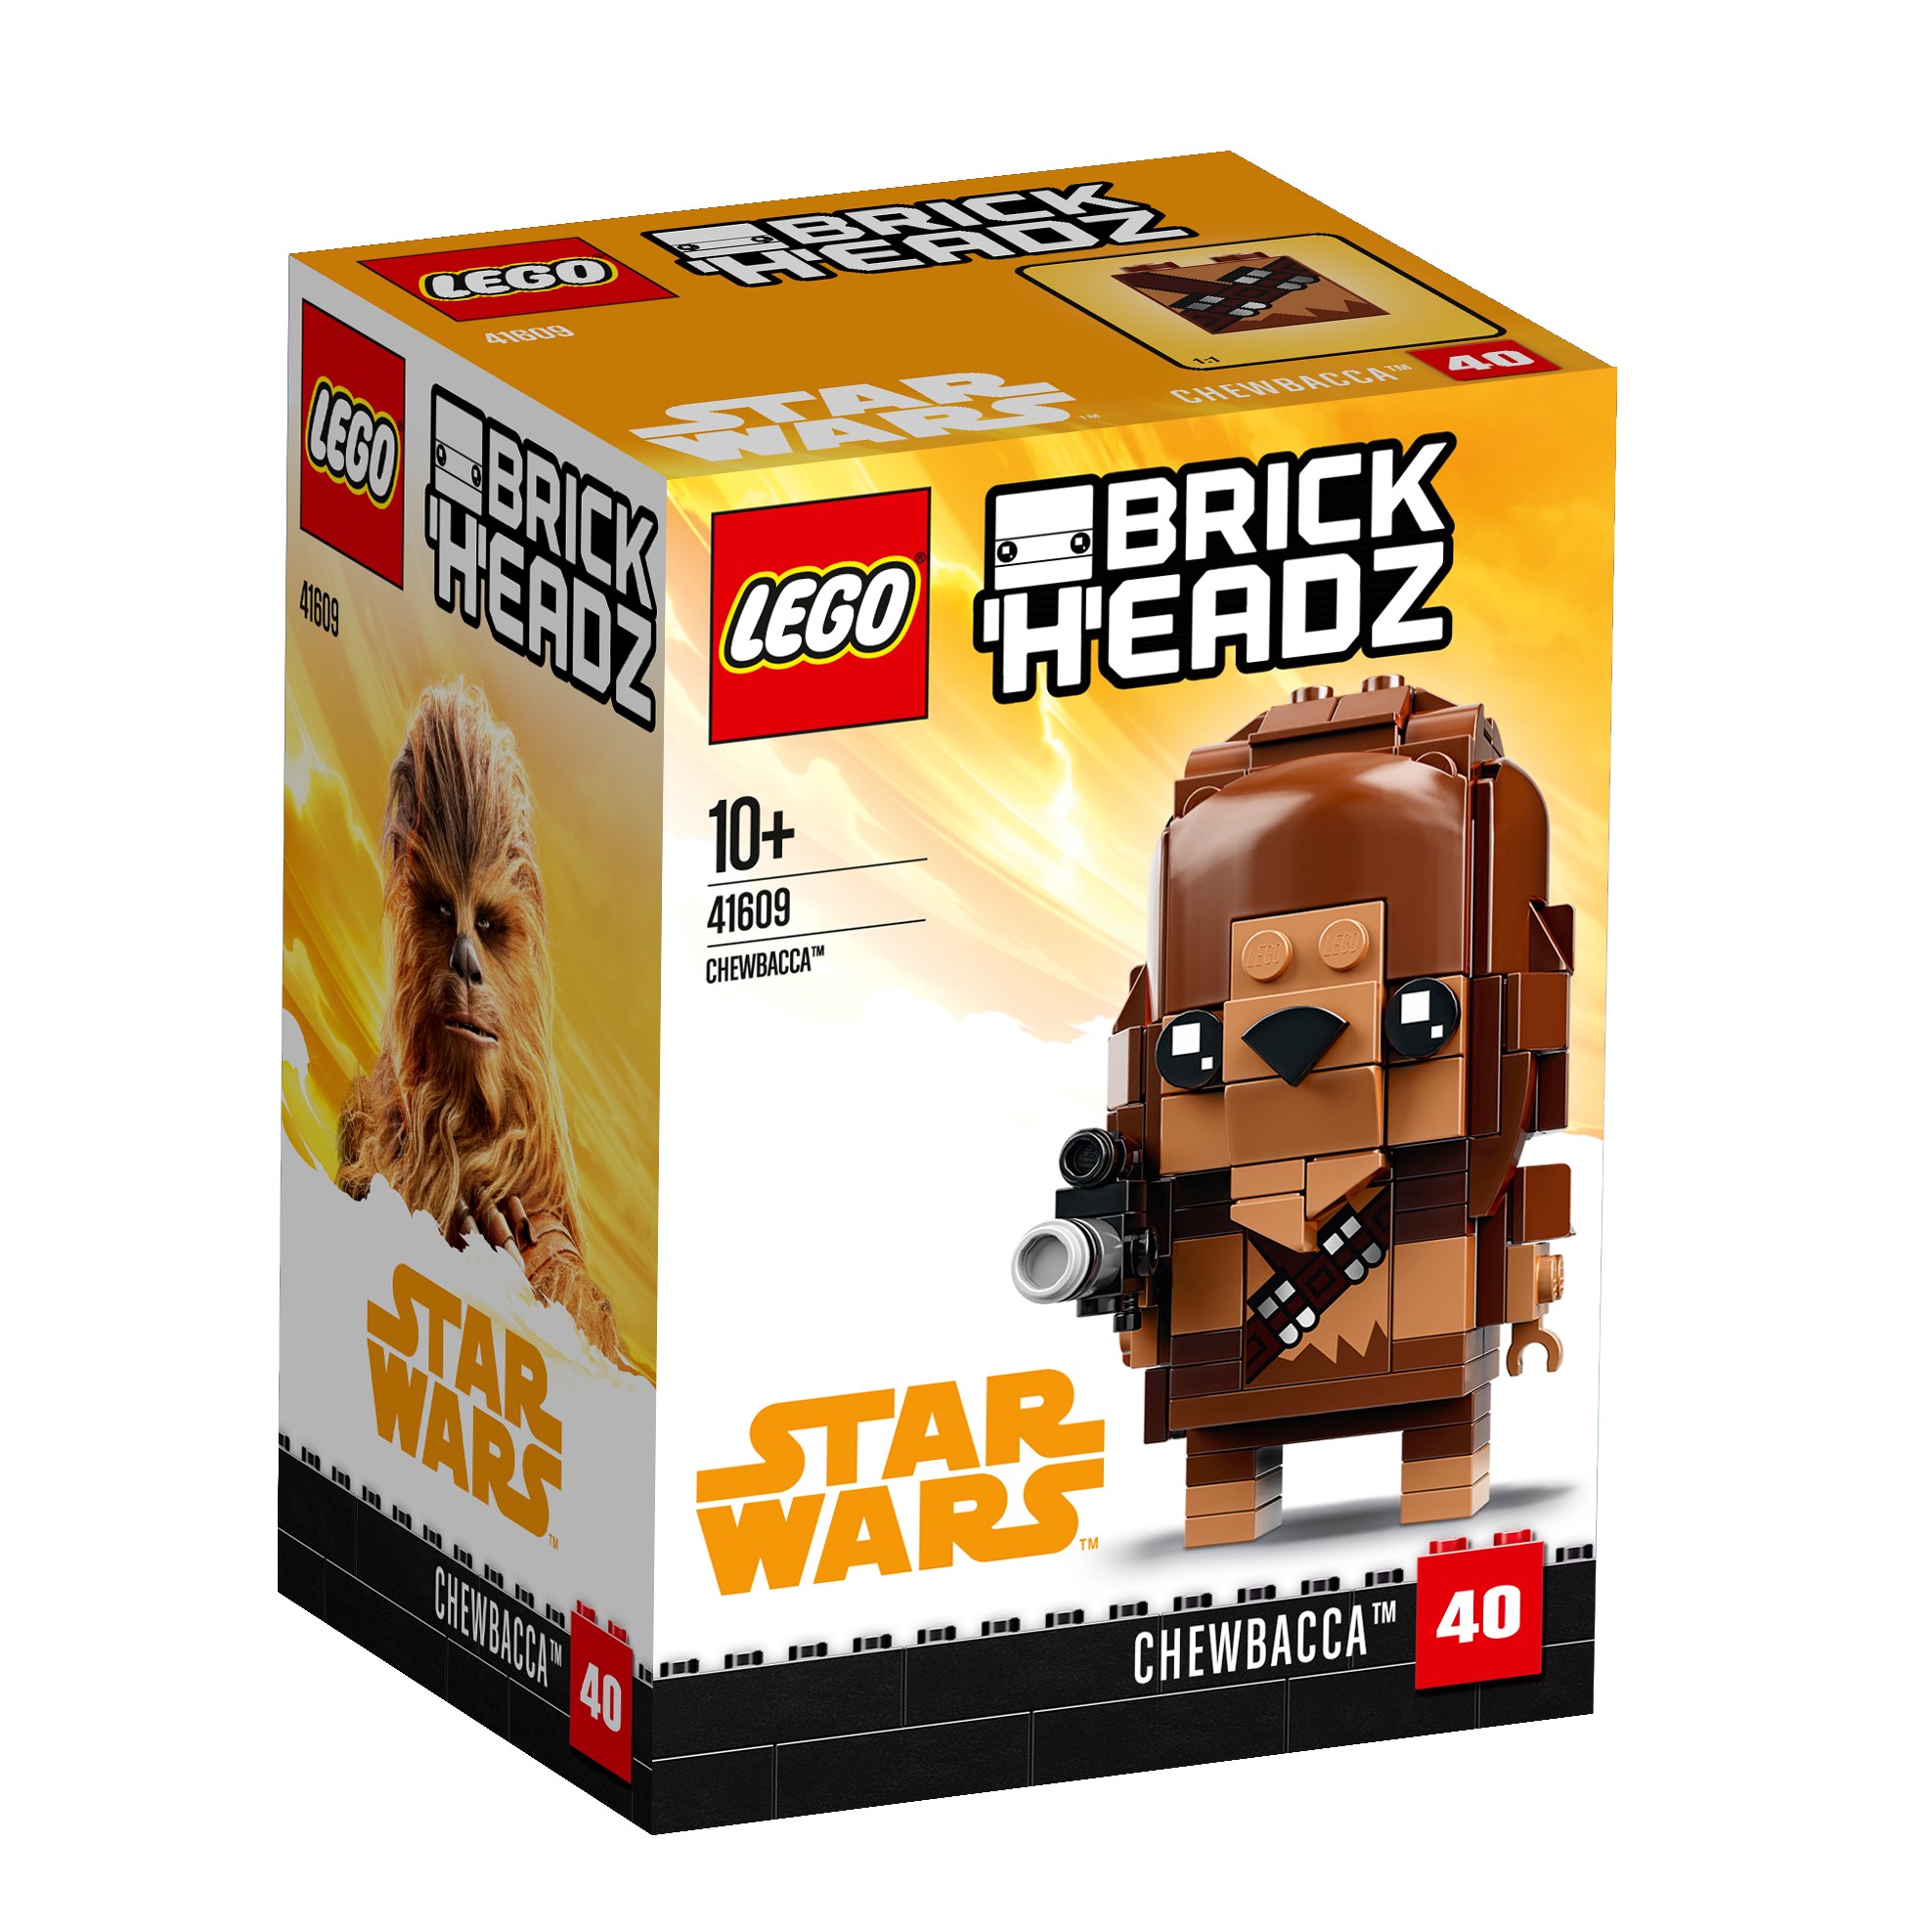 LEGO® BrickHeadz 41609 Chewbacca günstig kaufen | brickstore.at